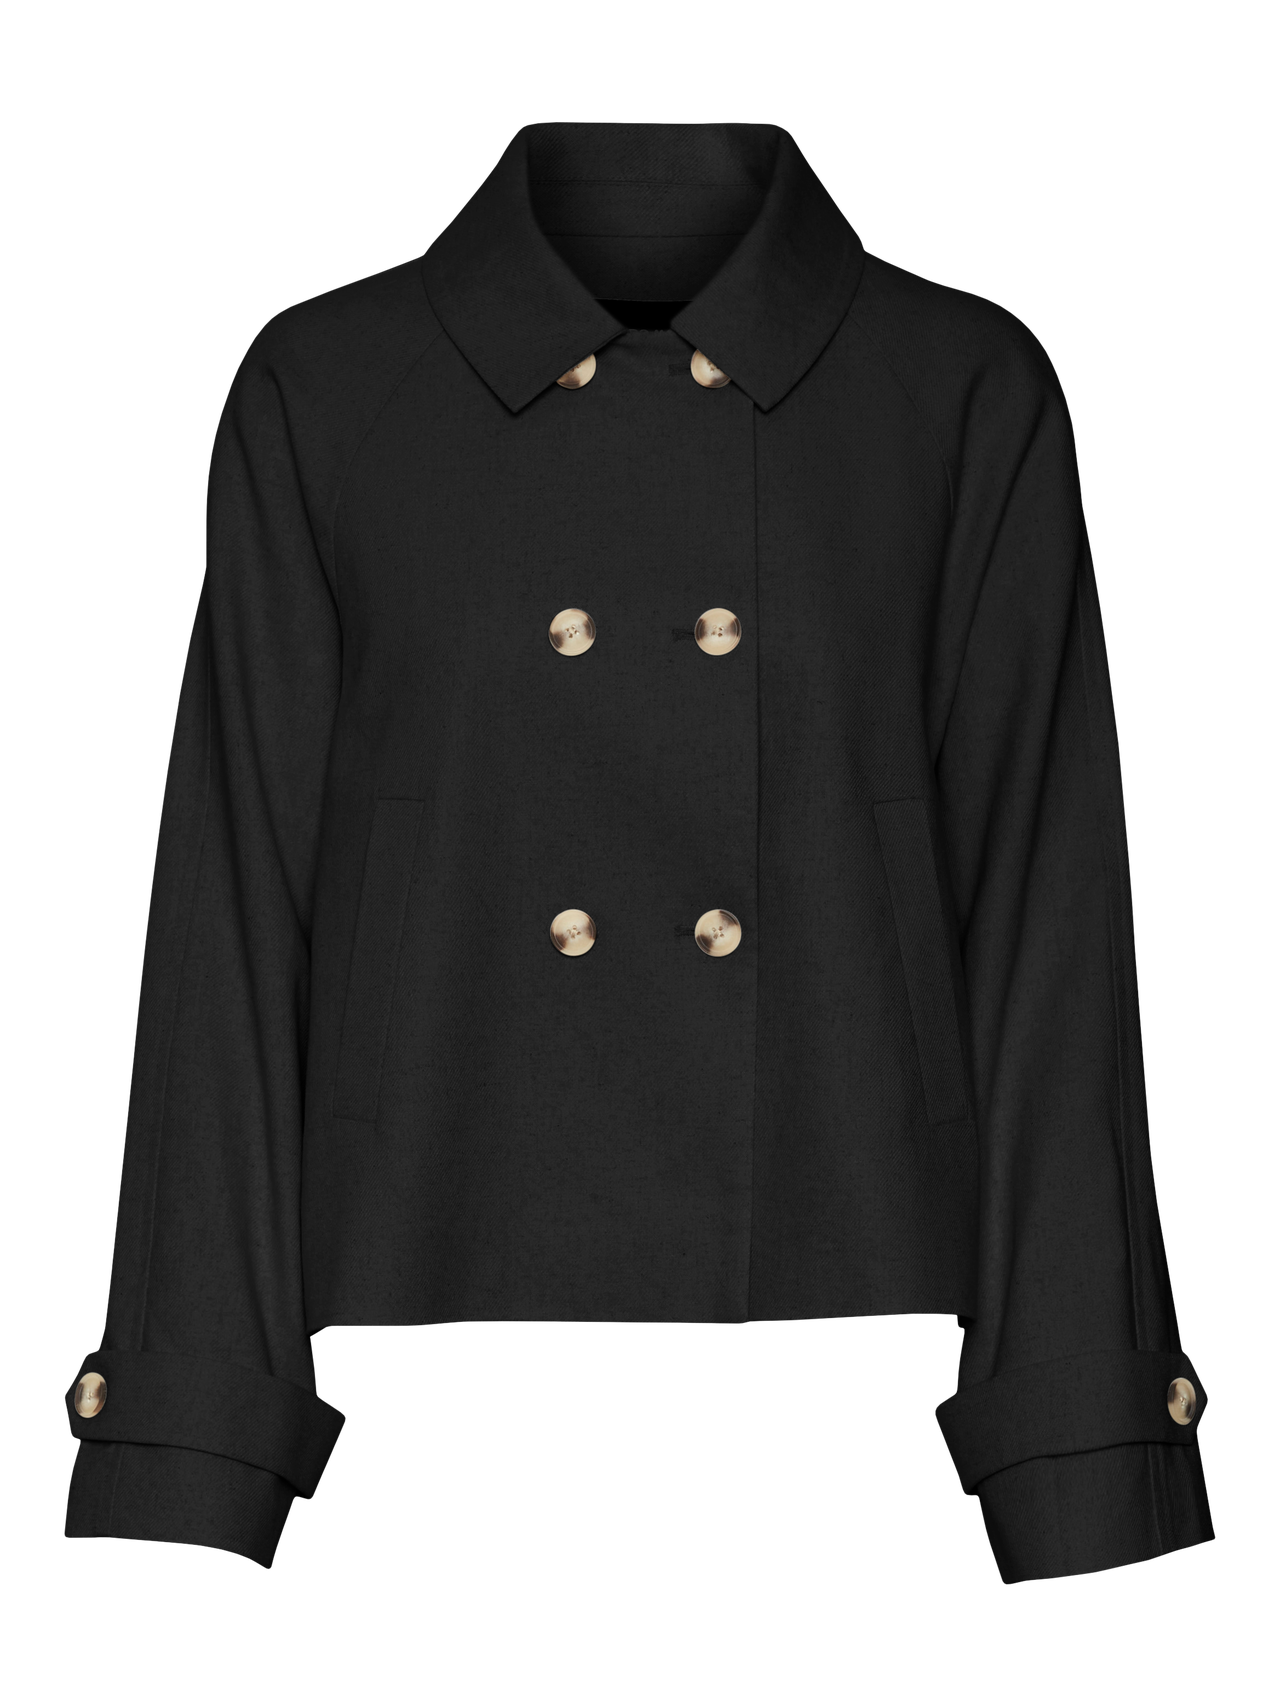 Vero Moda VMLINEN Jacket -Black - 10310038